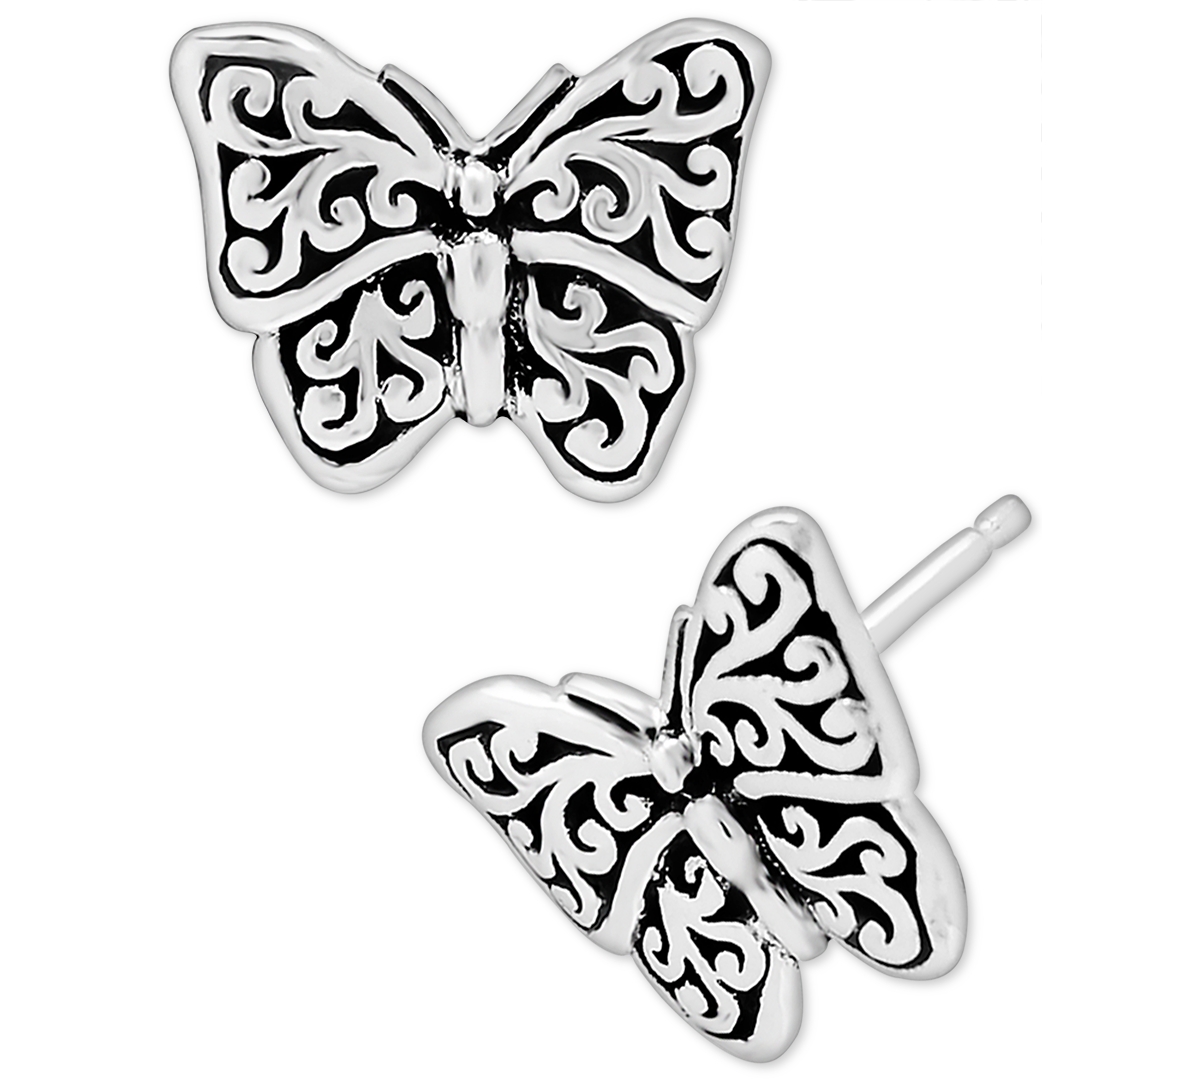 Filigree Butterfly Stud Earrings in Sterling Silver - Silver